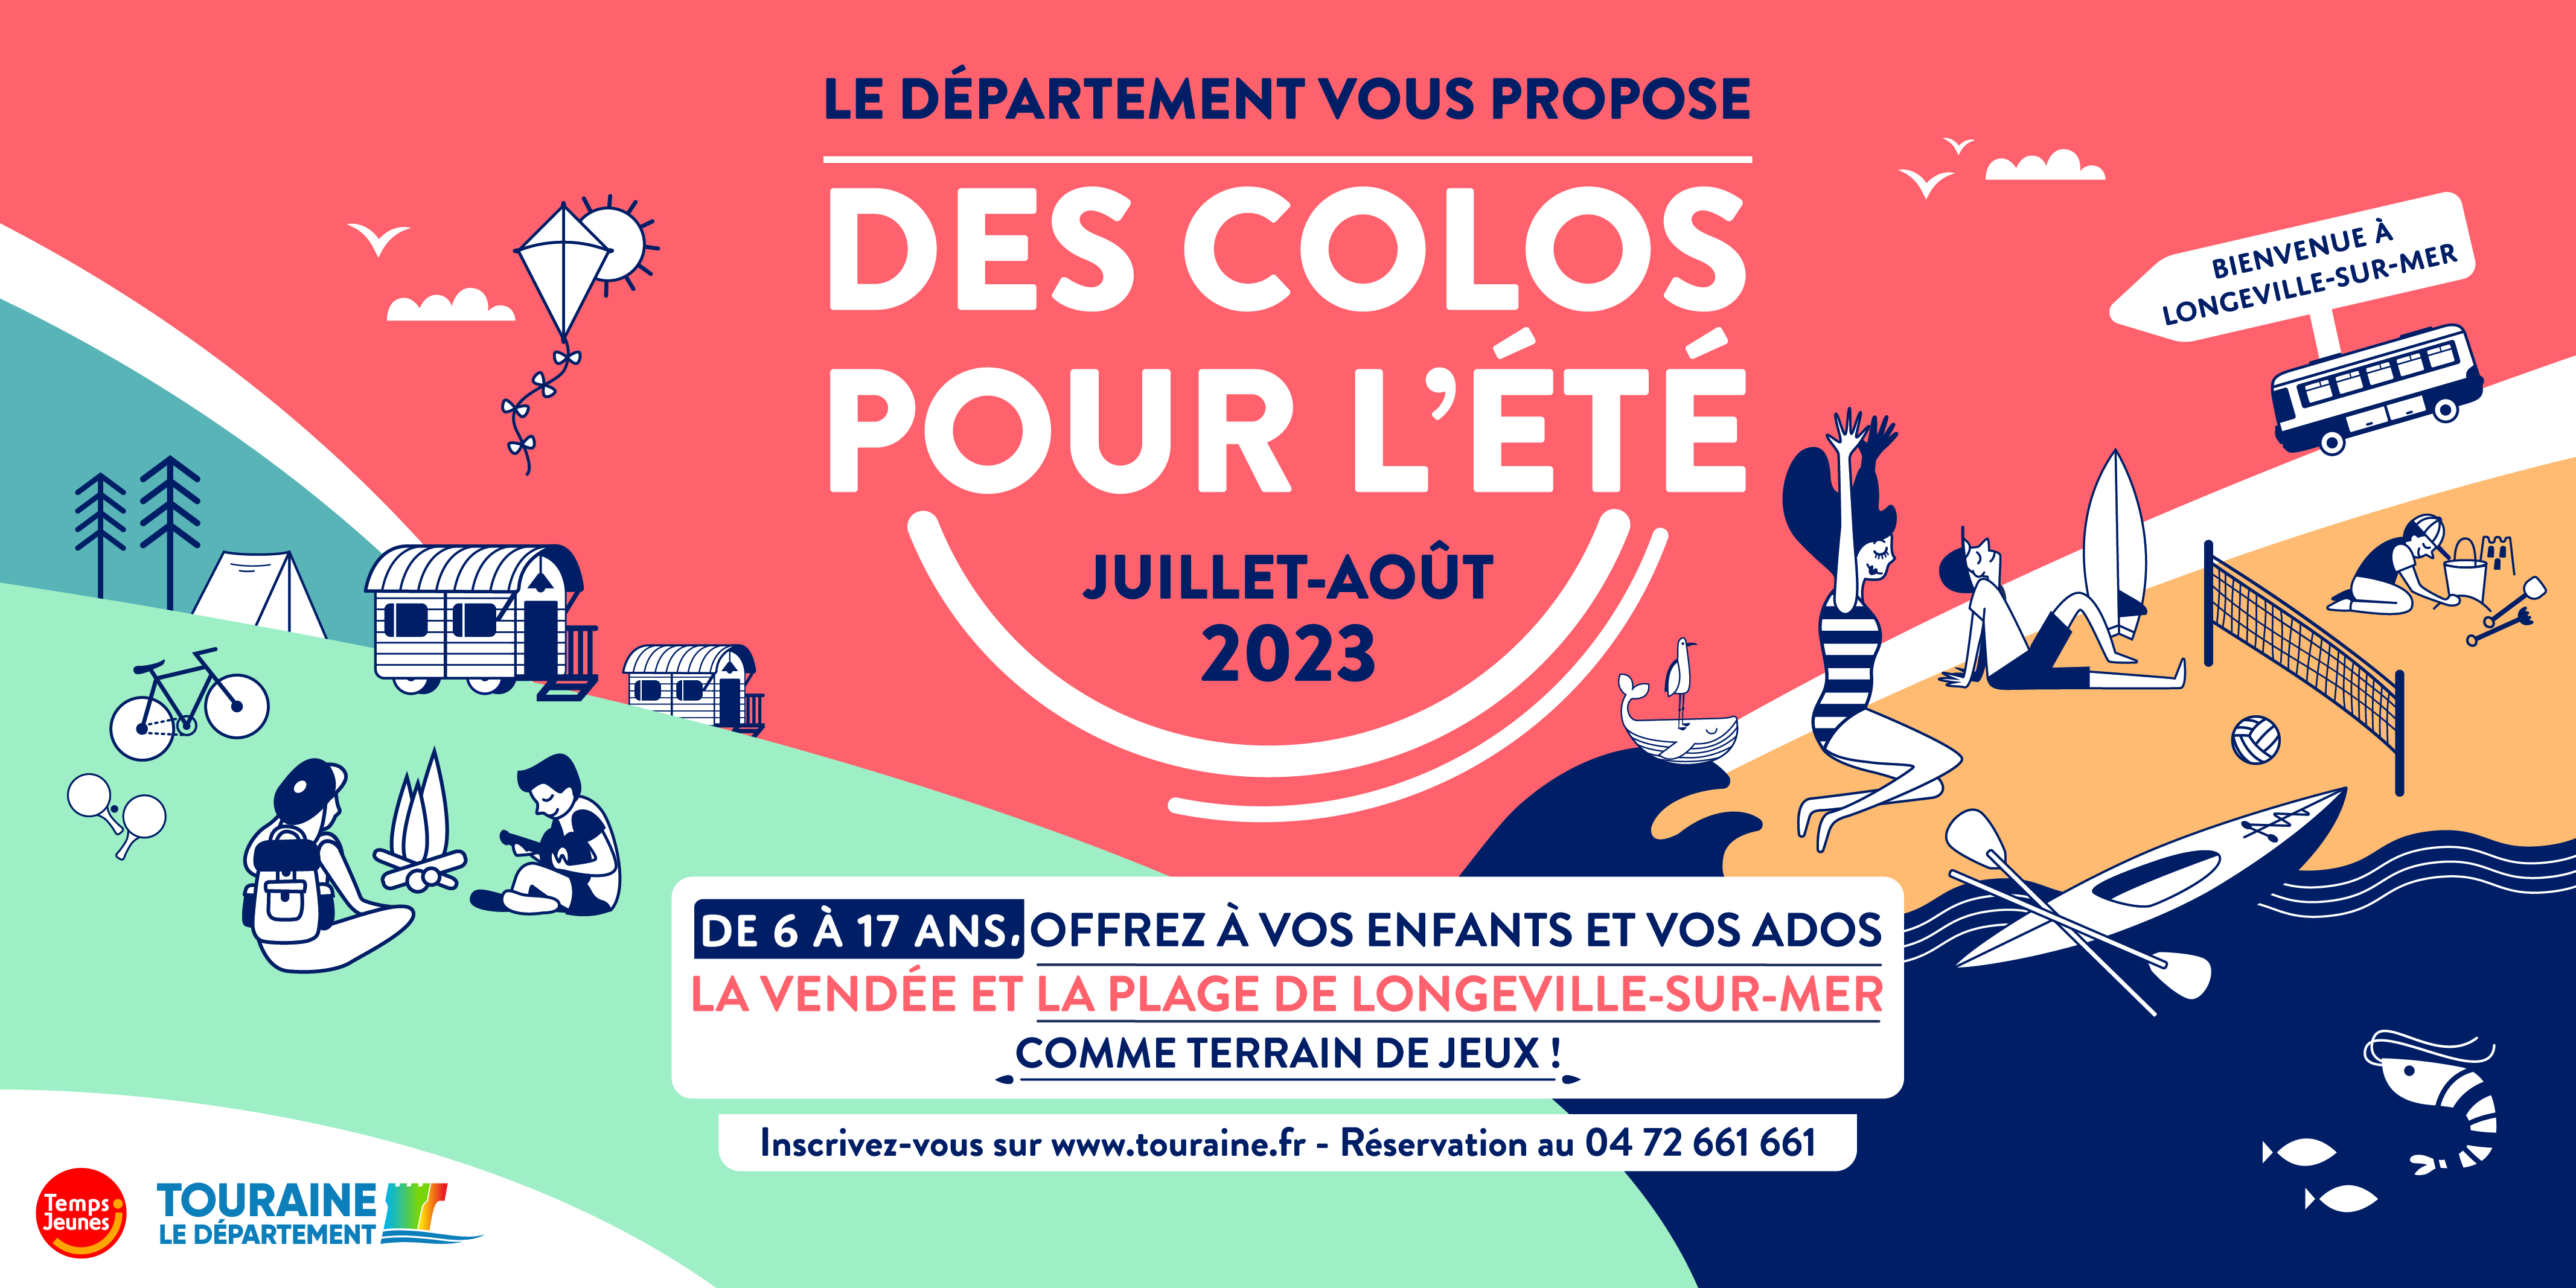 Cet été, je pars en colonies de vacances avec le Département d’Indre-et-Loire !